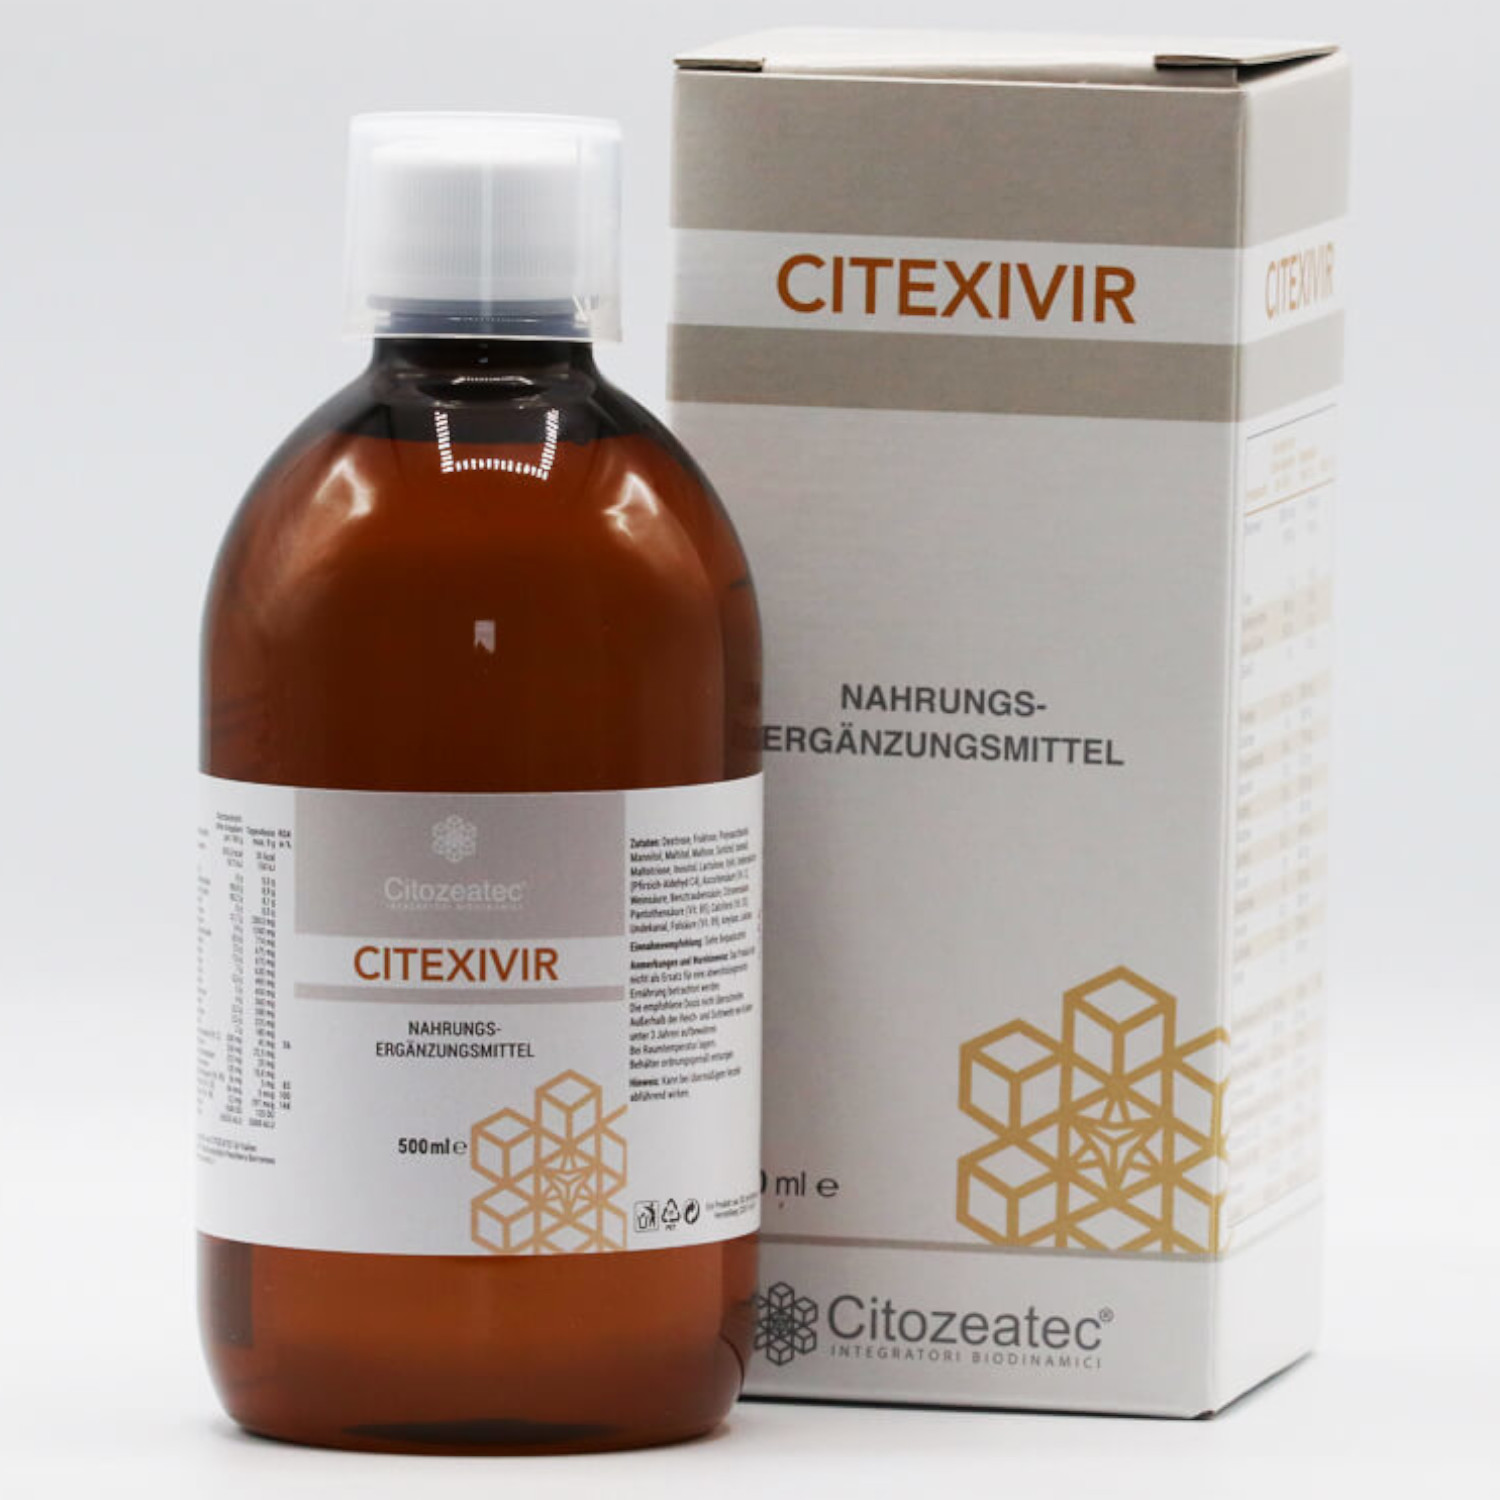 Citozeatec Citexivir 500ml von Cellavita - Flasche & Verpackung